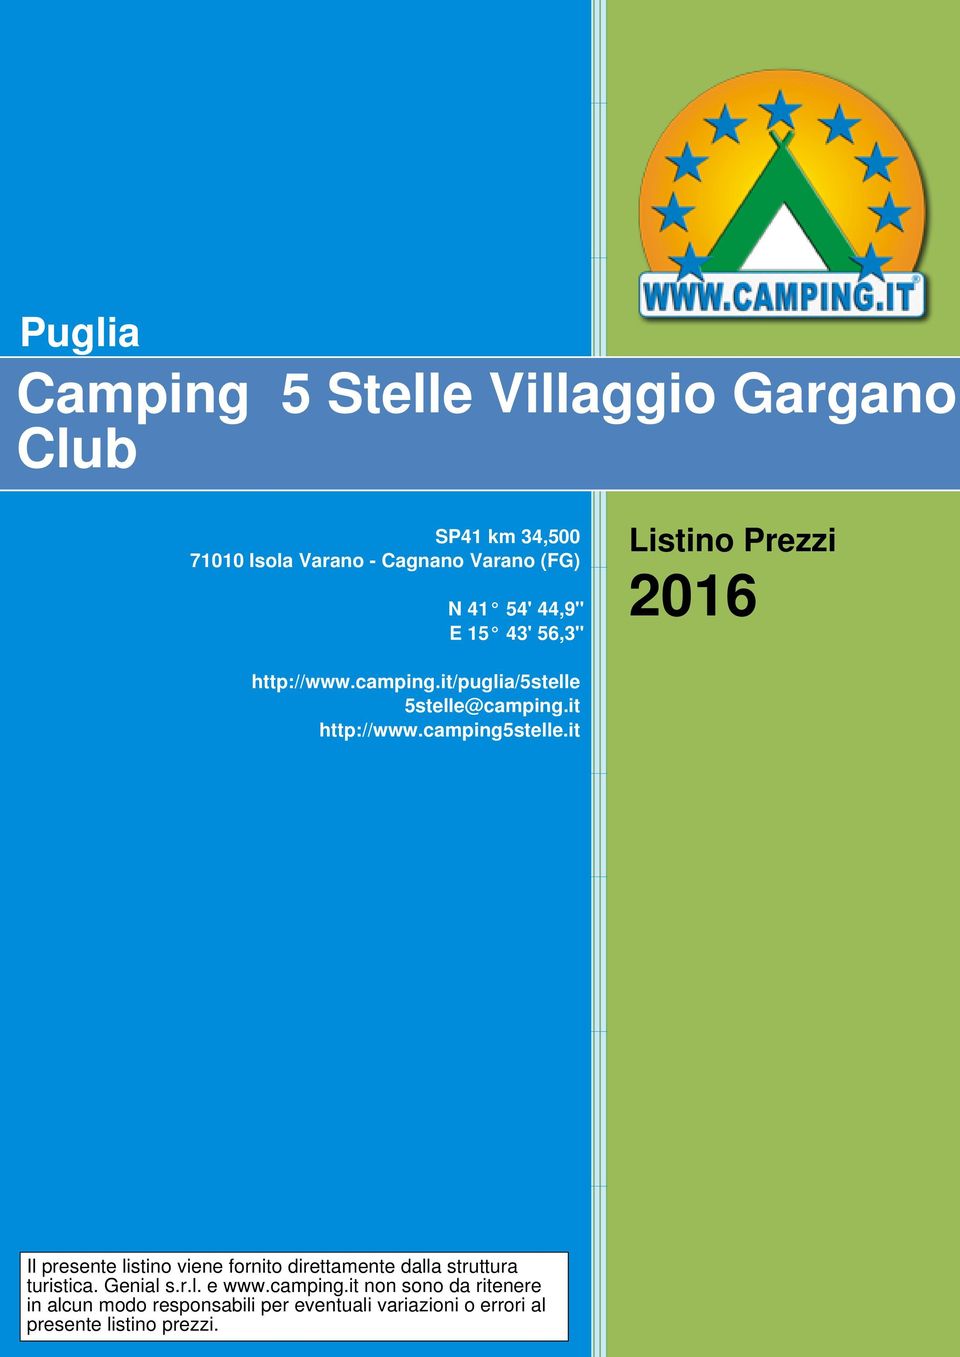 camping5stelle.it Il presente listino viene fornito direttamente dalla struttura turistica. Genial s.r.l. e www.